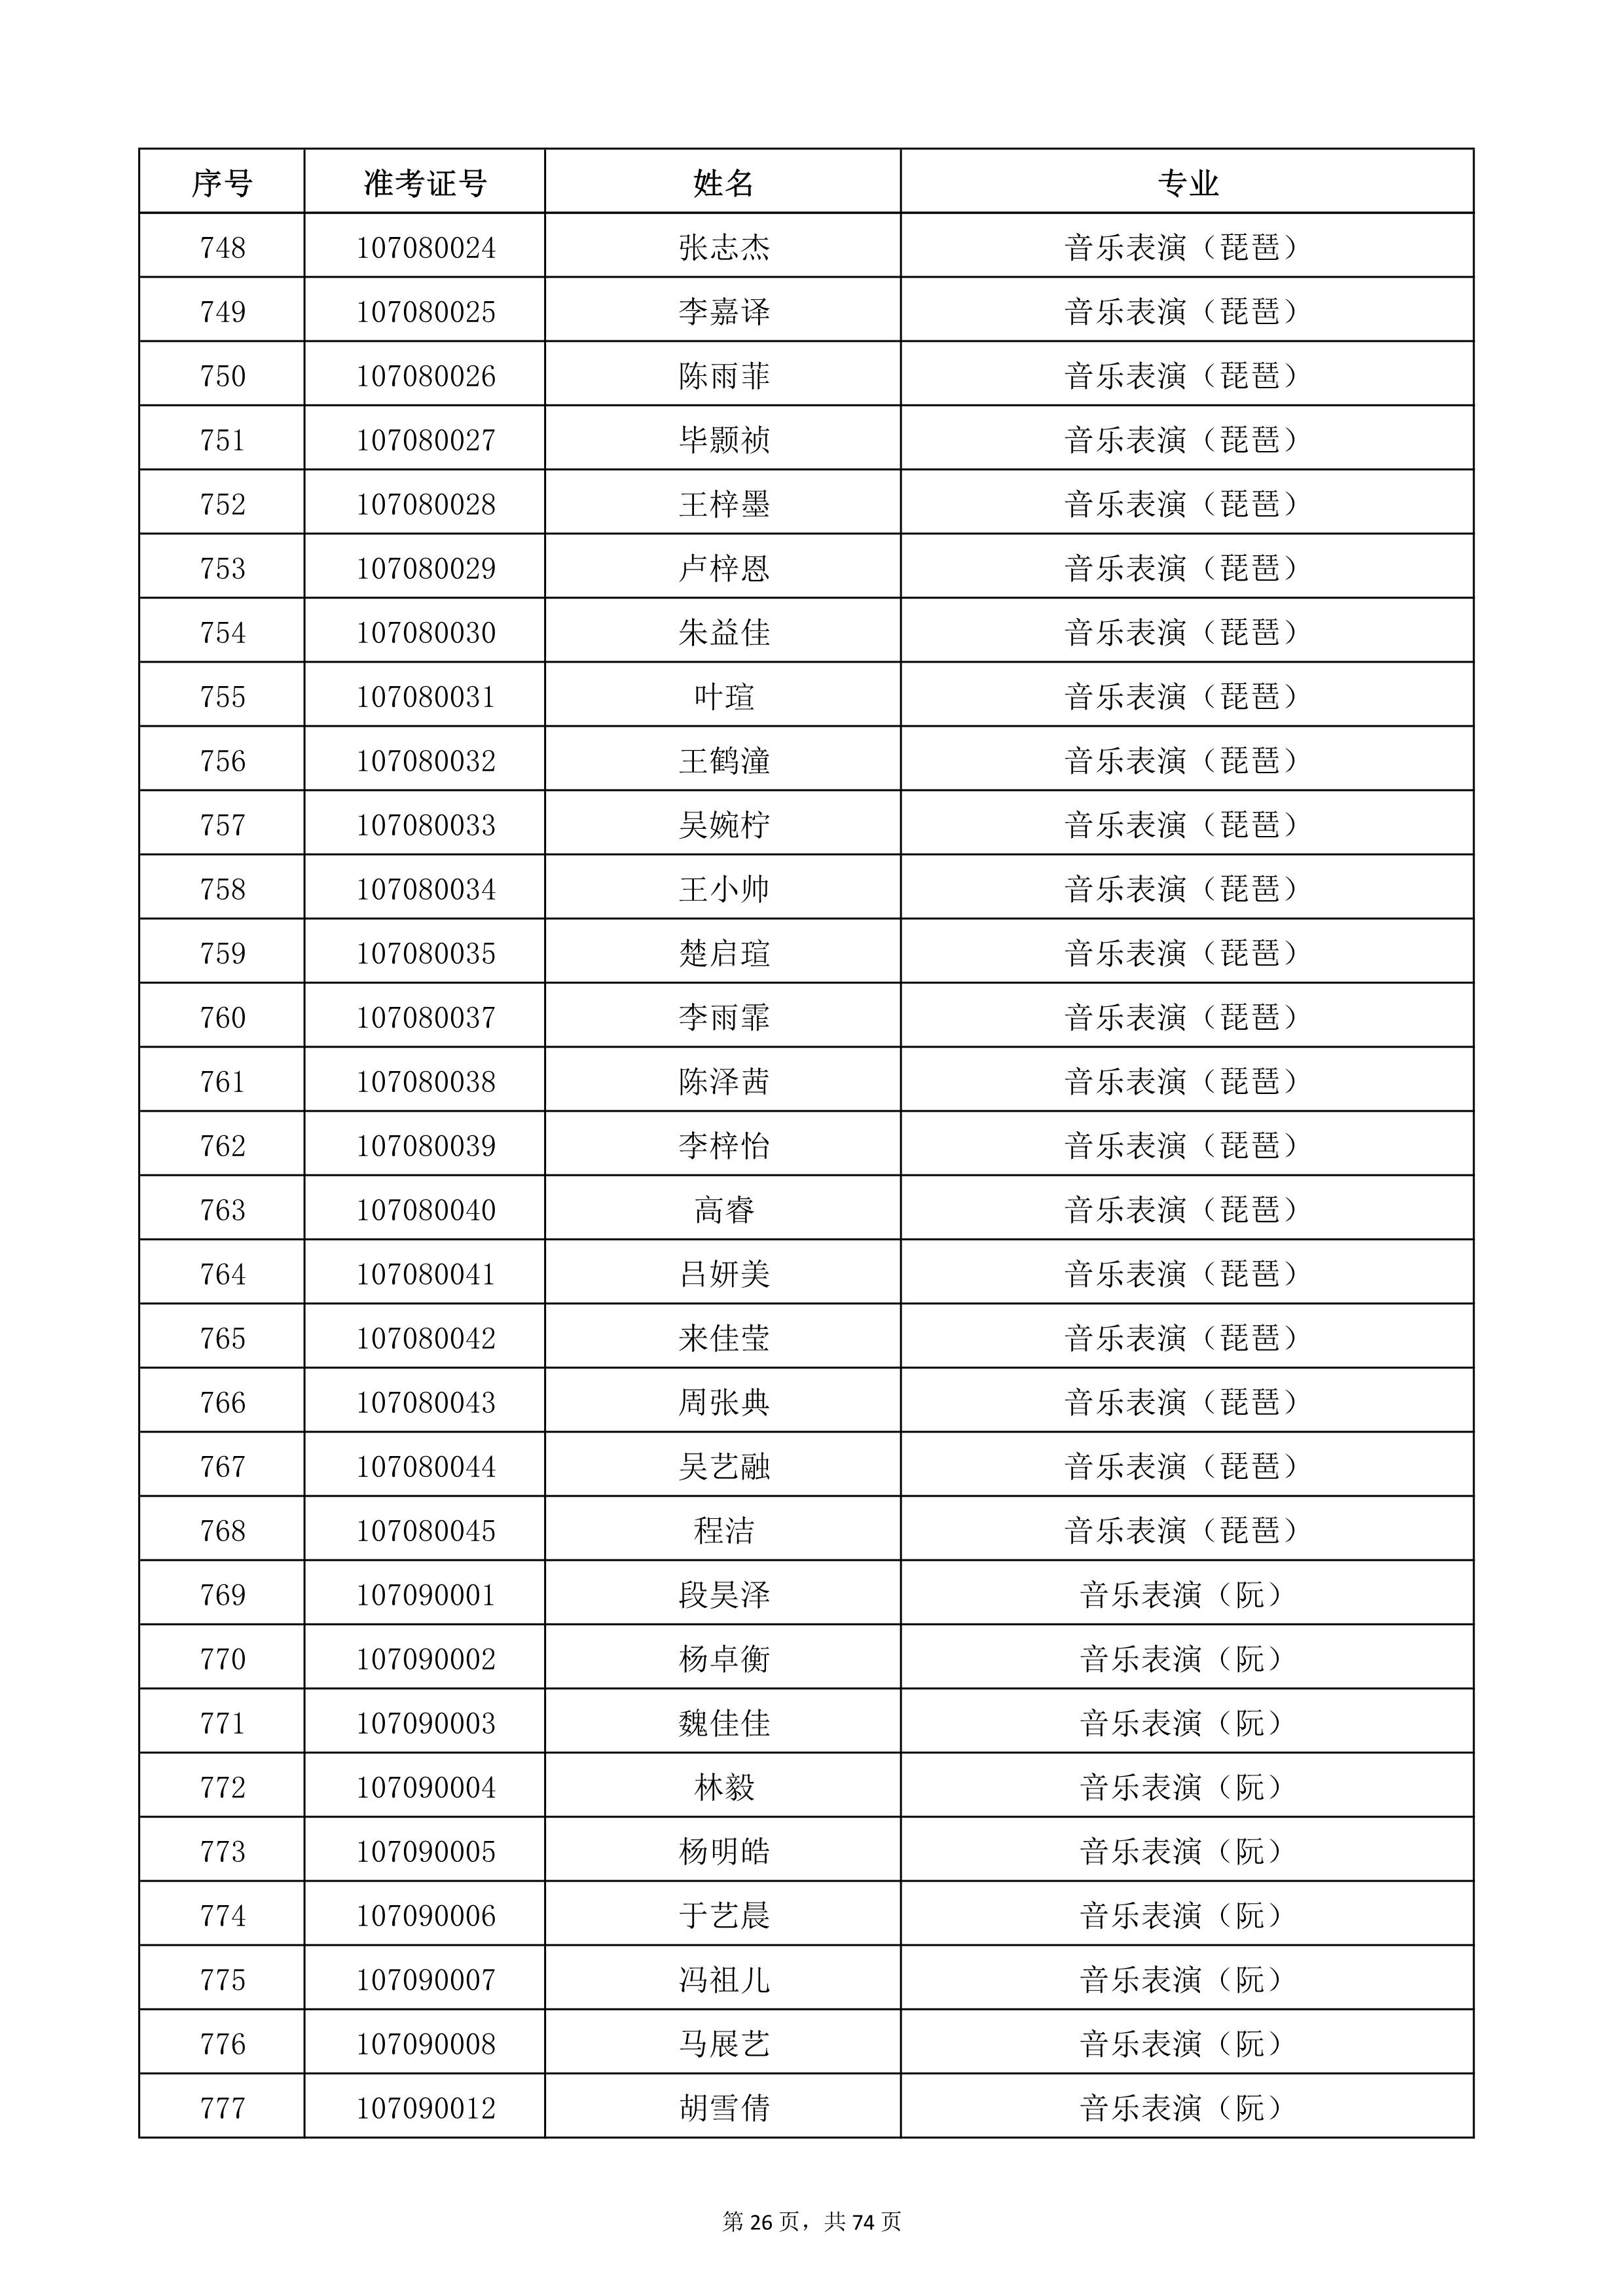 天津音乐学院2022年本科招生考试复试名单_26.jpg